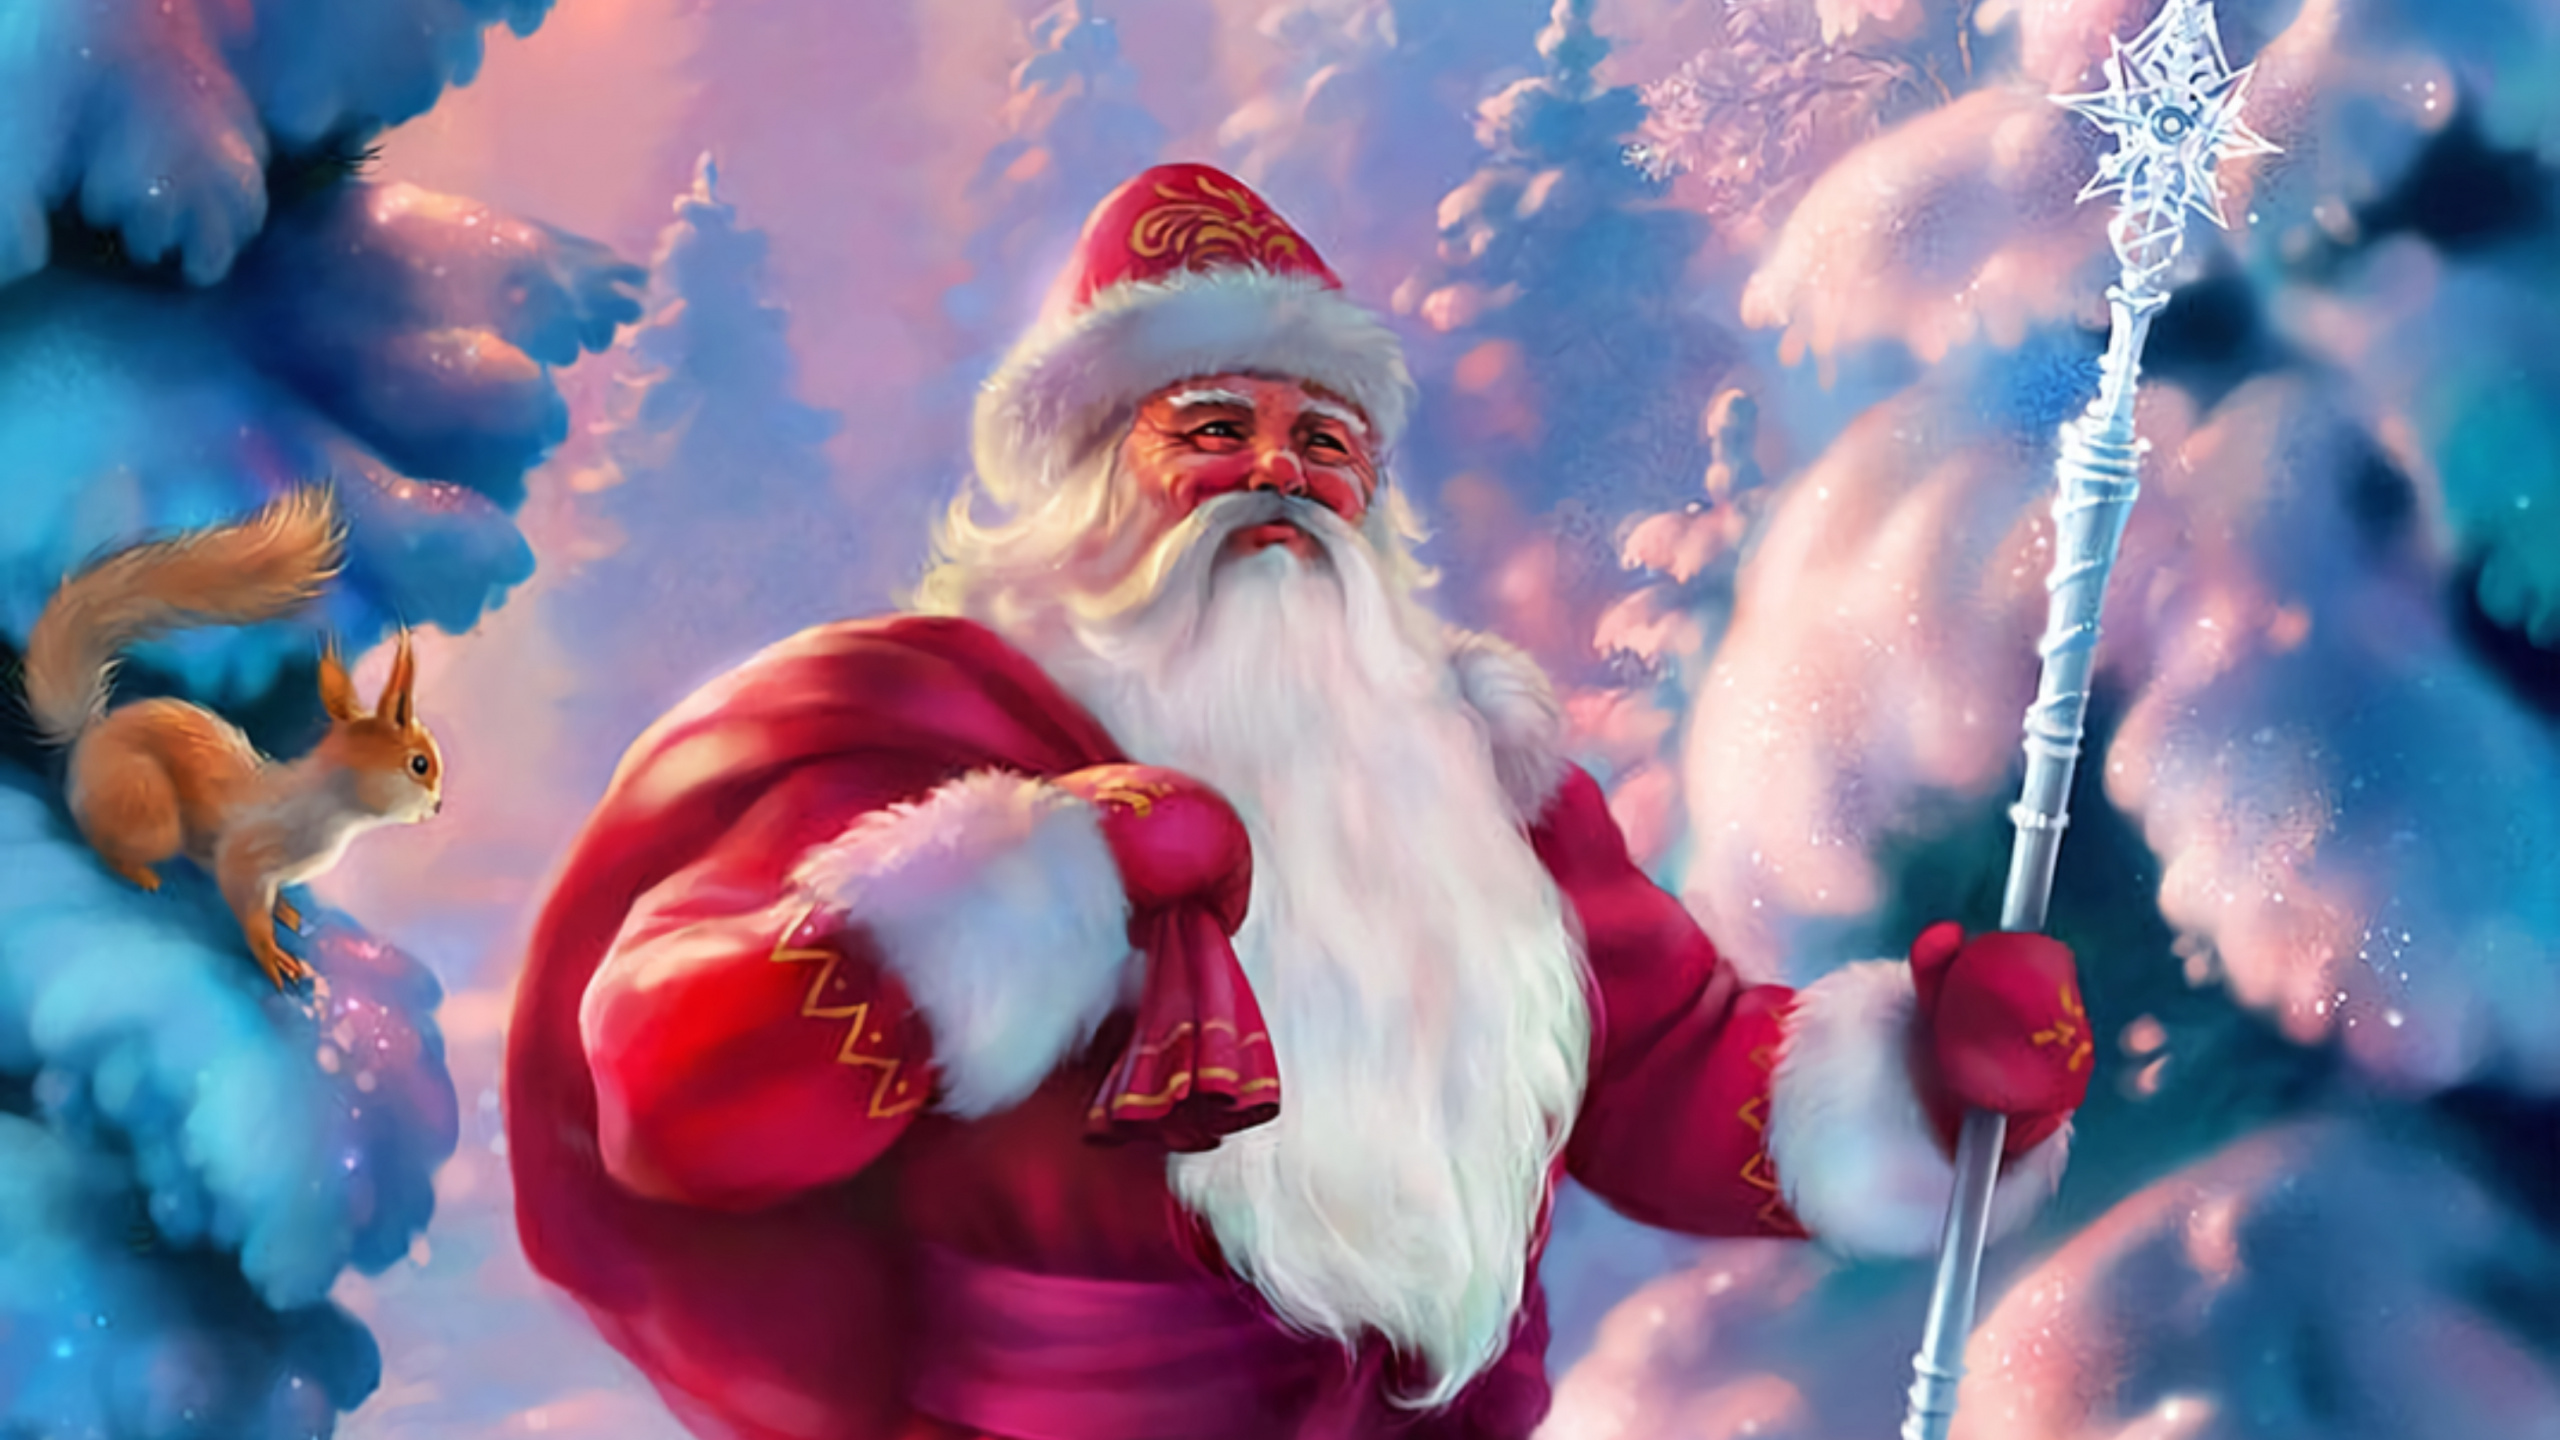 Santa Claus, Ded Moroz, El Día De Navidad, Navidad, Animación. Wallpaper in 2560x1440 Resolution